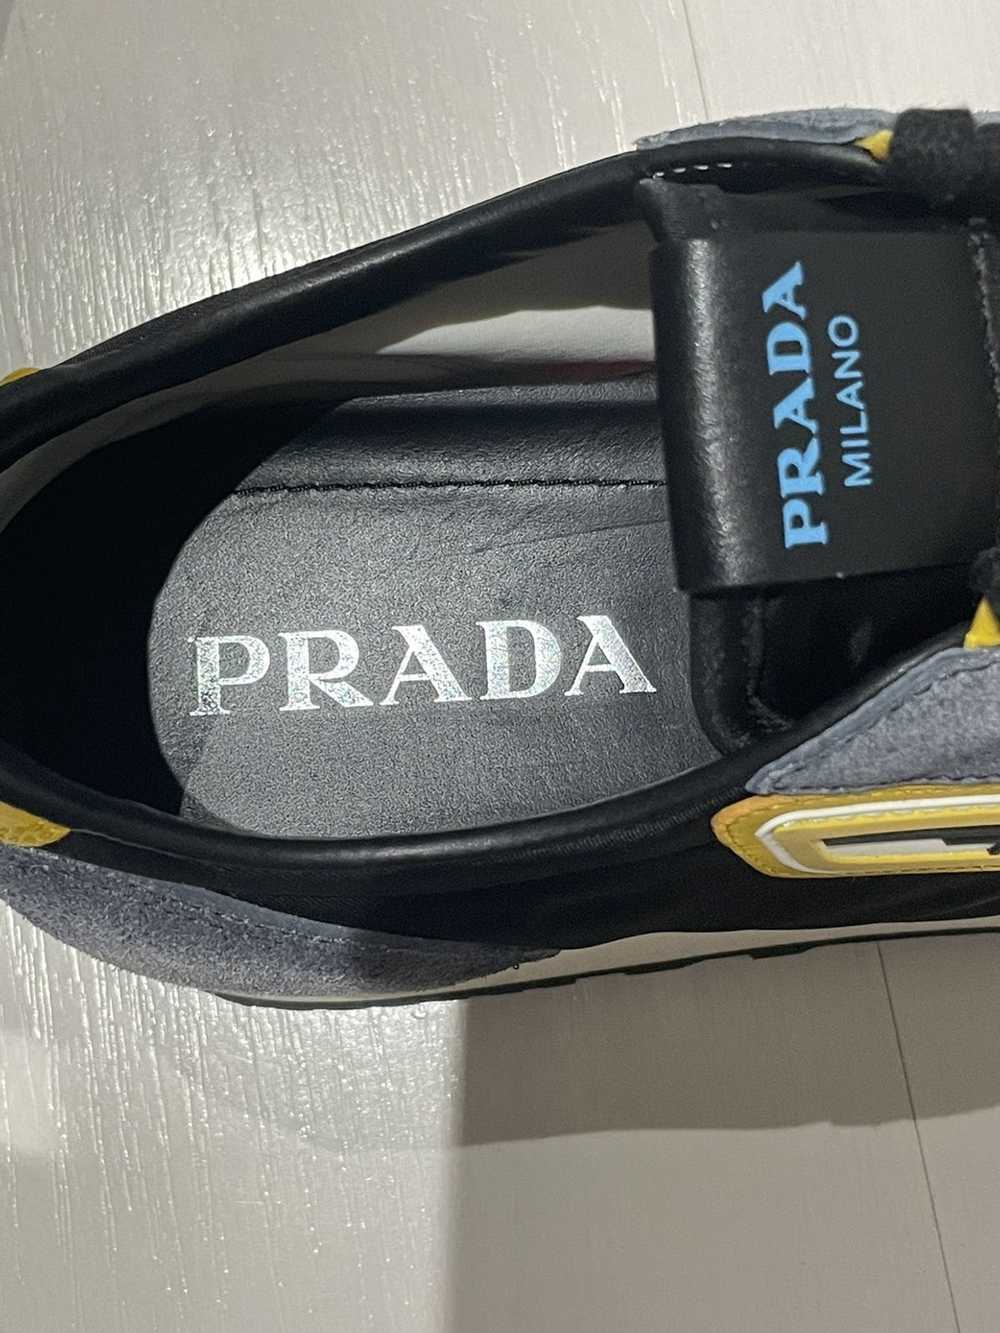 Prada Prada Suede Sneakers US Men 8 1/2 - image 6